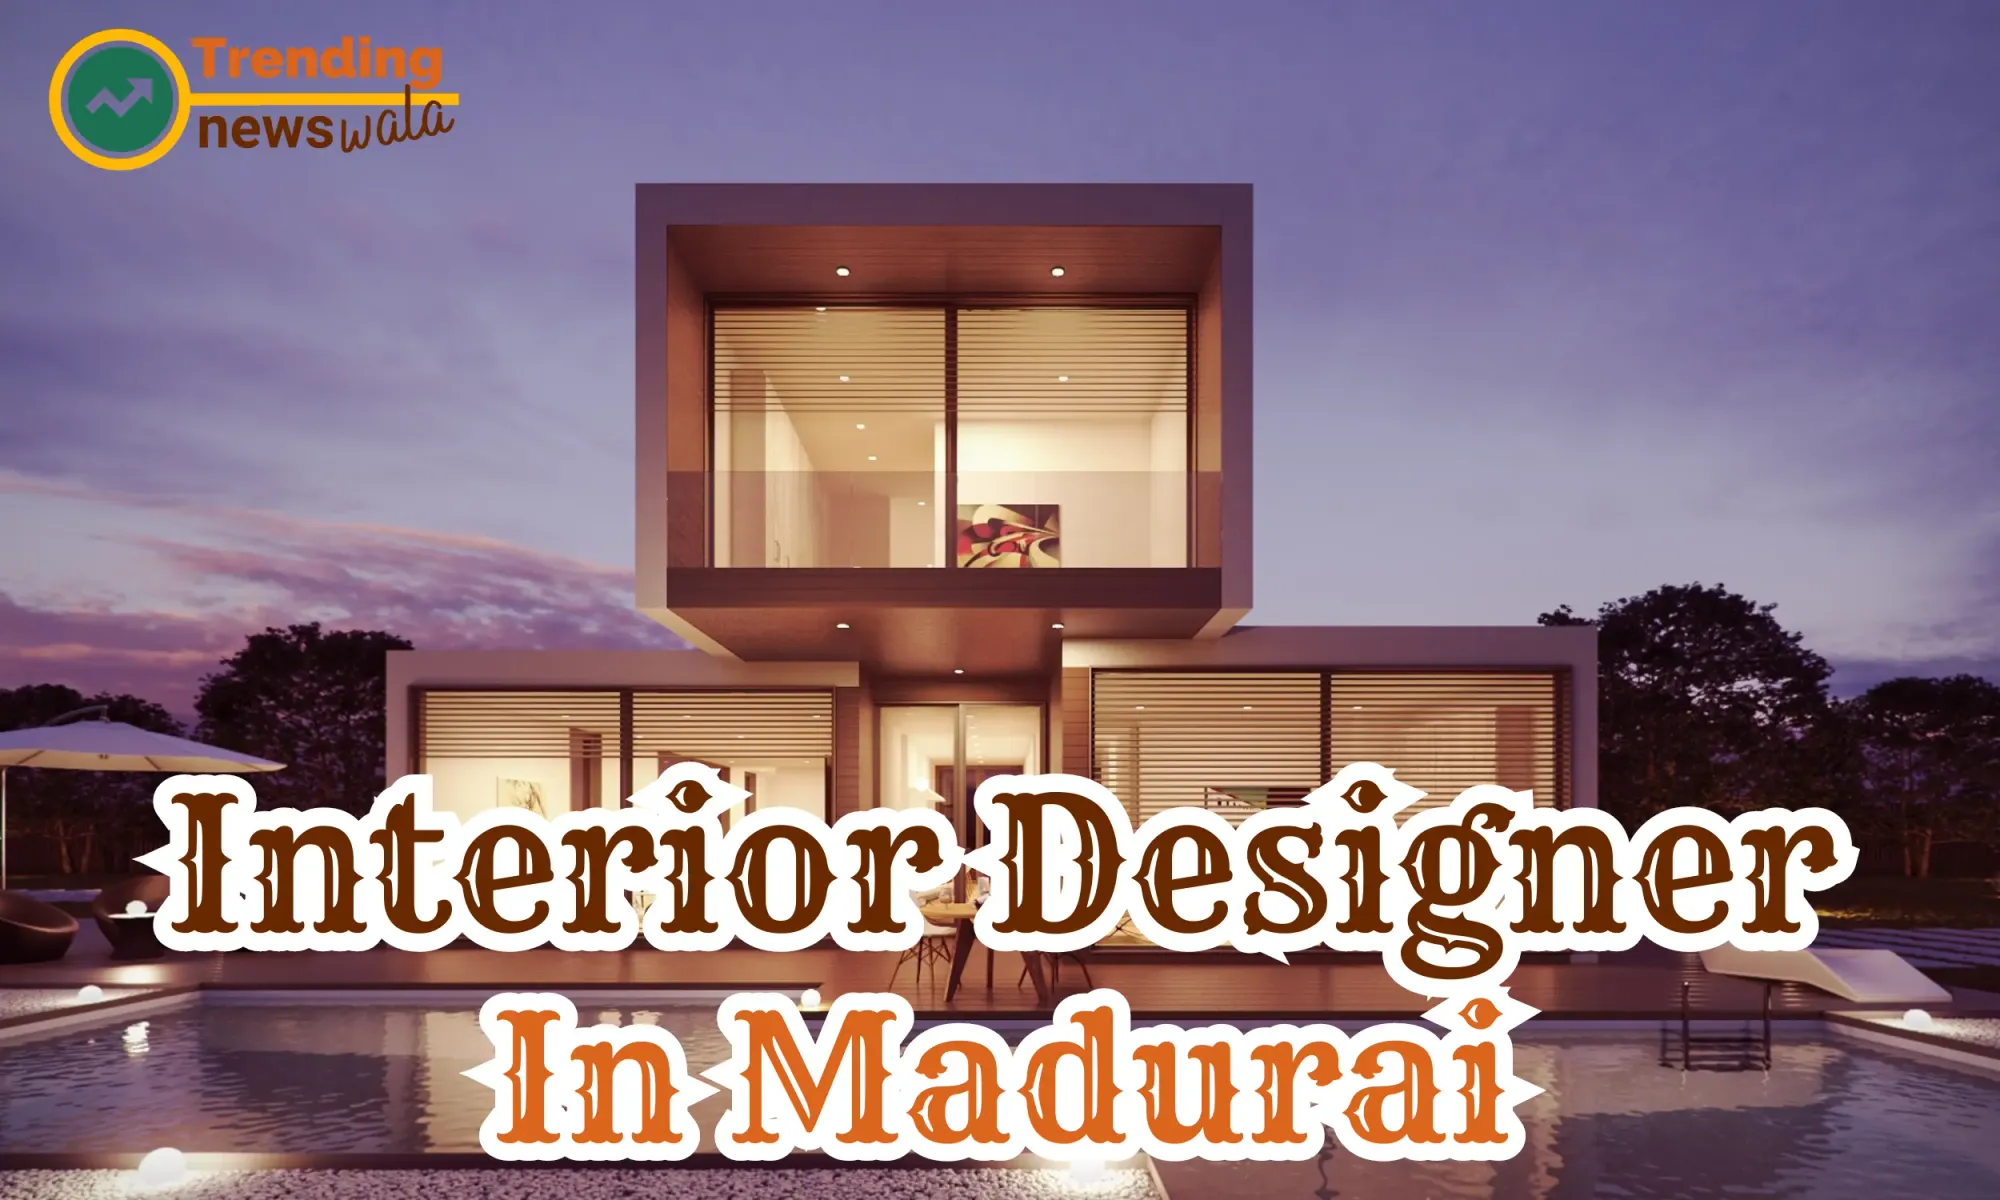 Interior Designer in Madurai